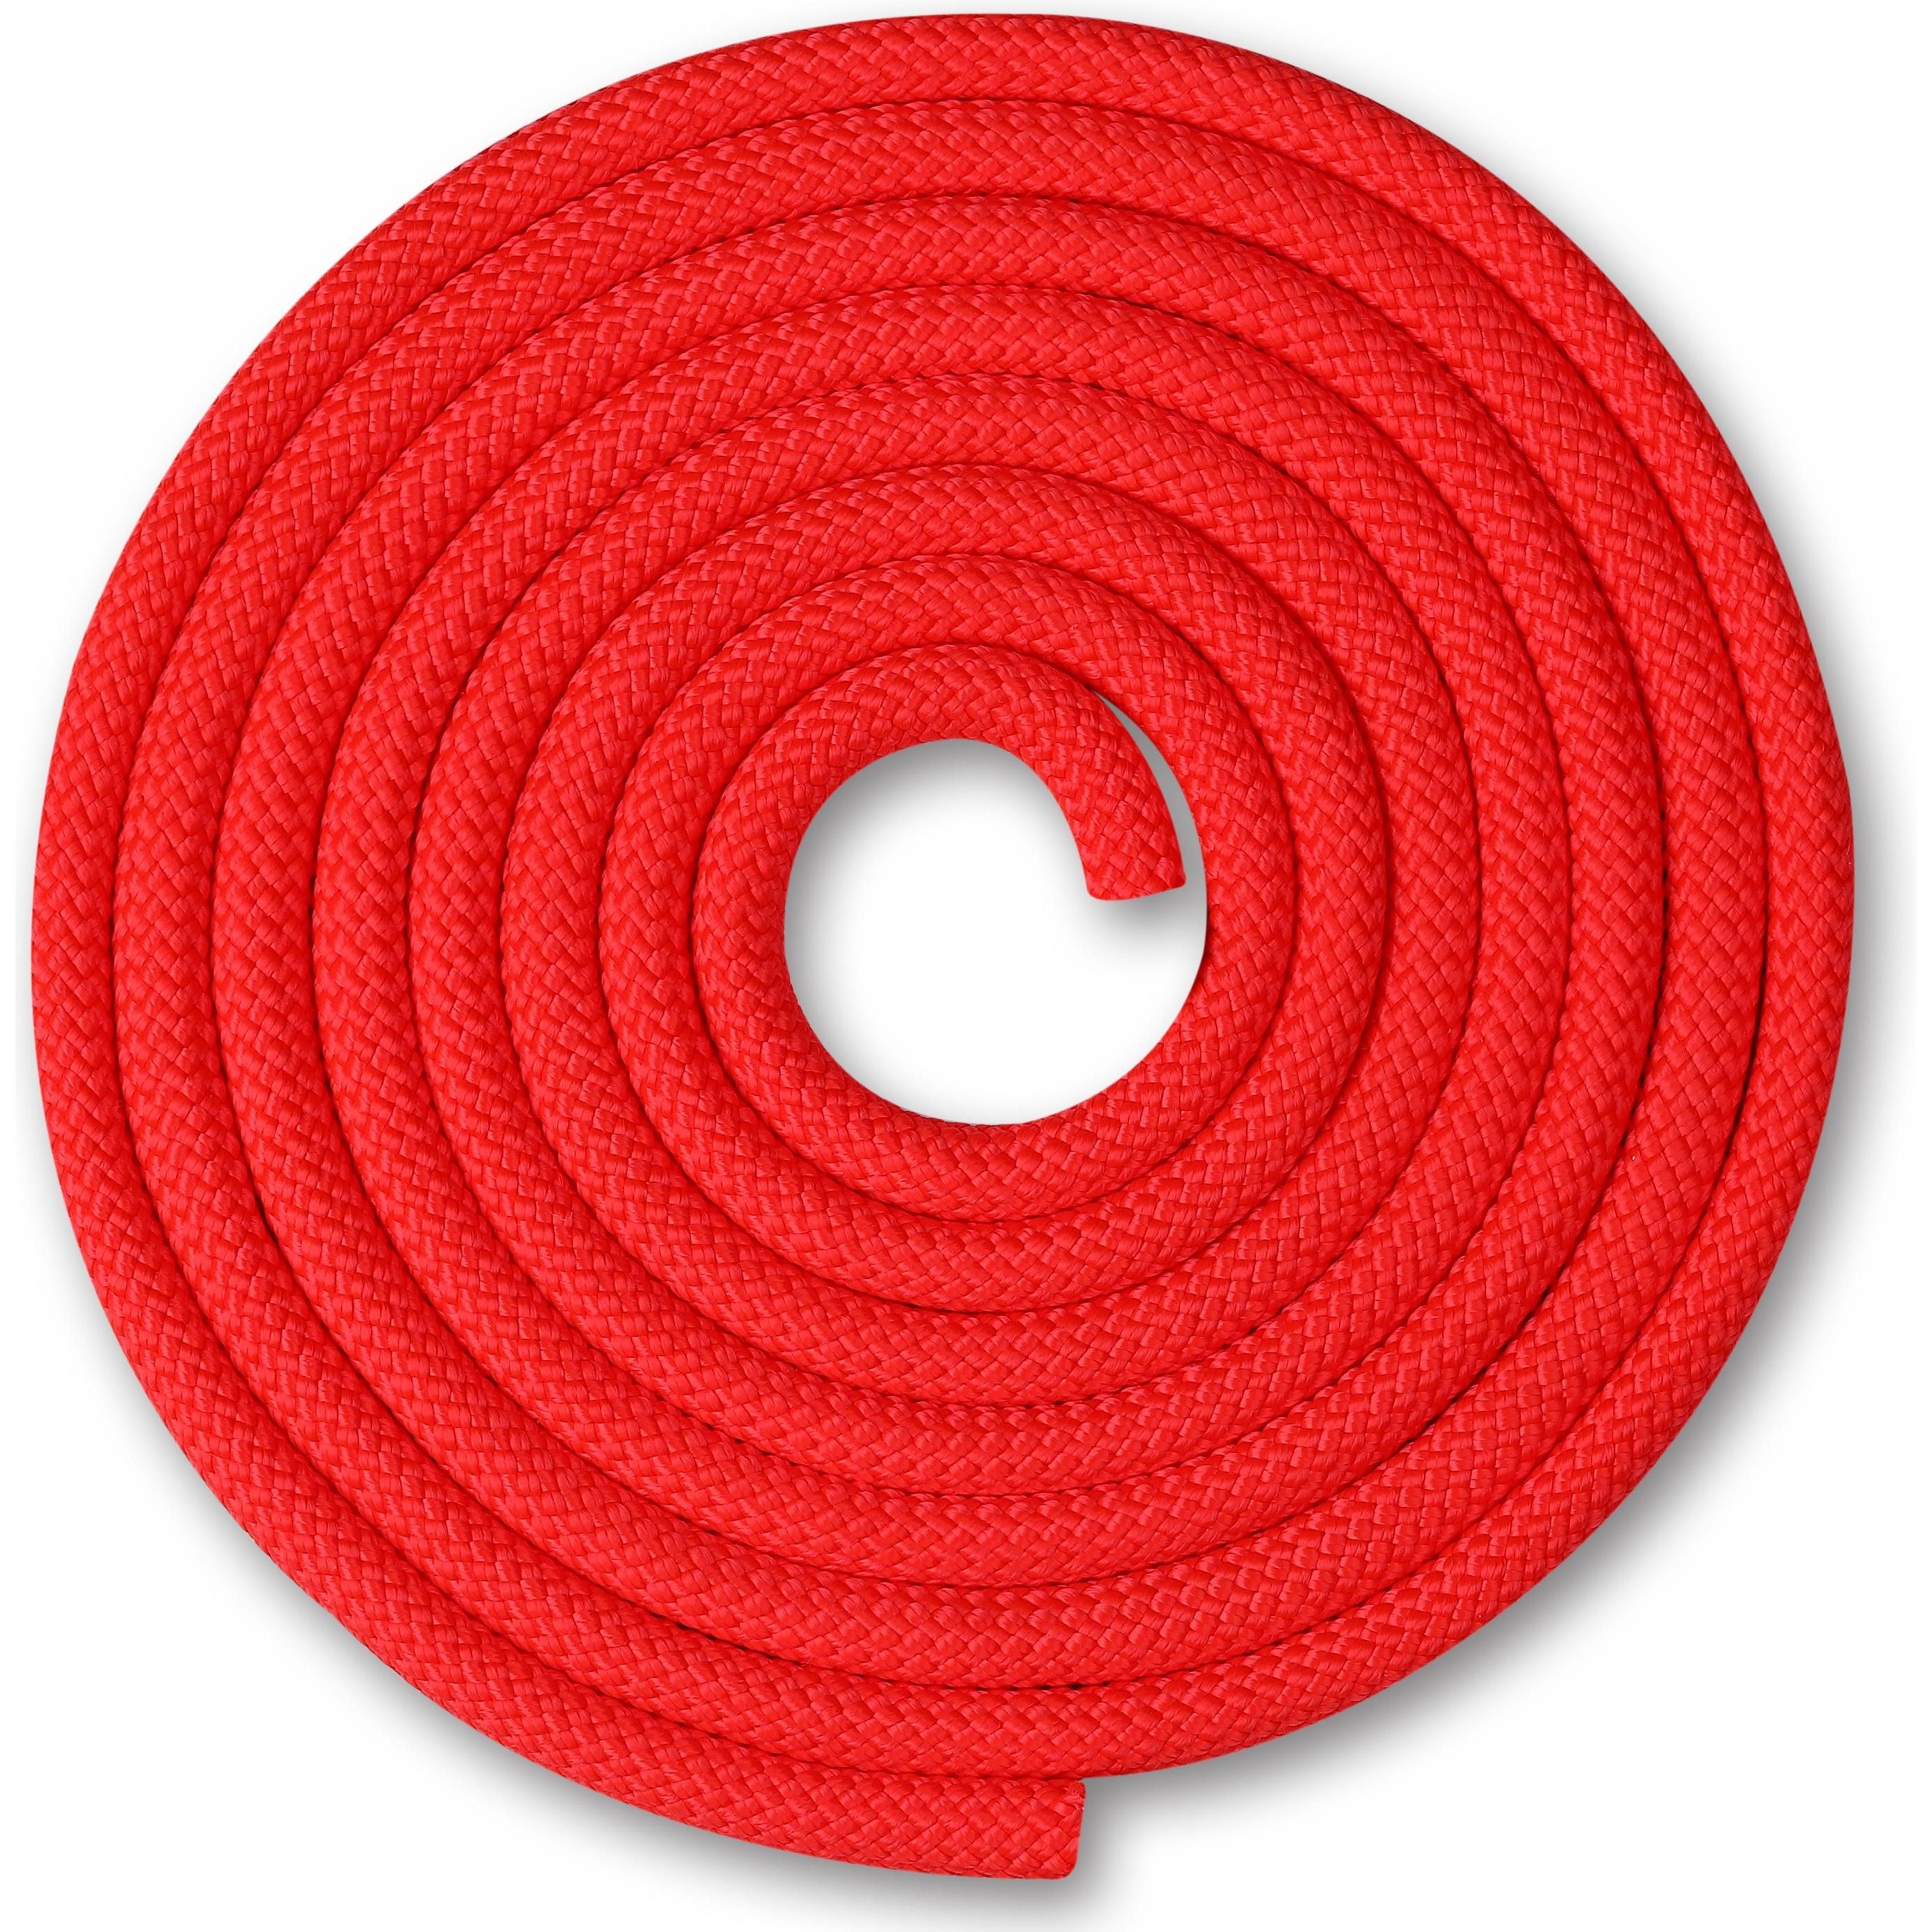 Cuerda para Gimnasia Rítmica Ponderada 150g INDIGO 2,5 m Rojo